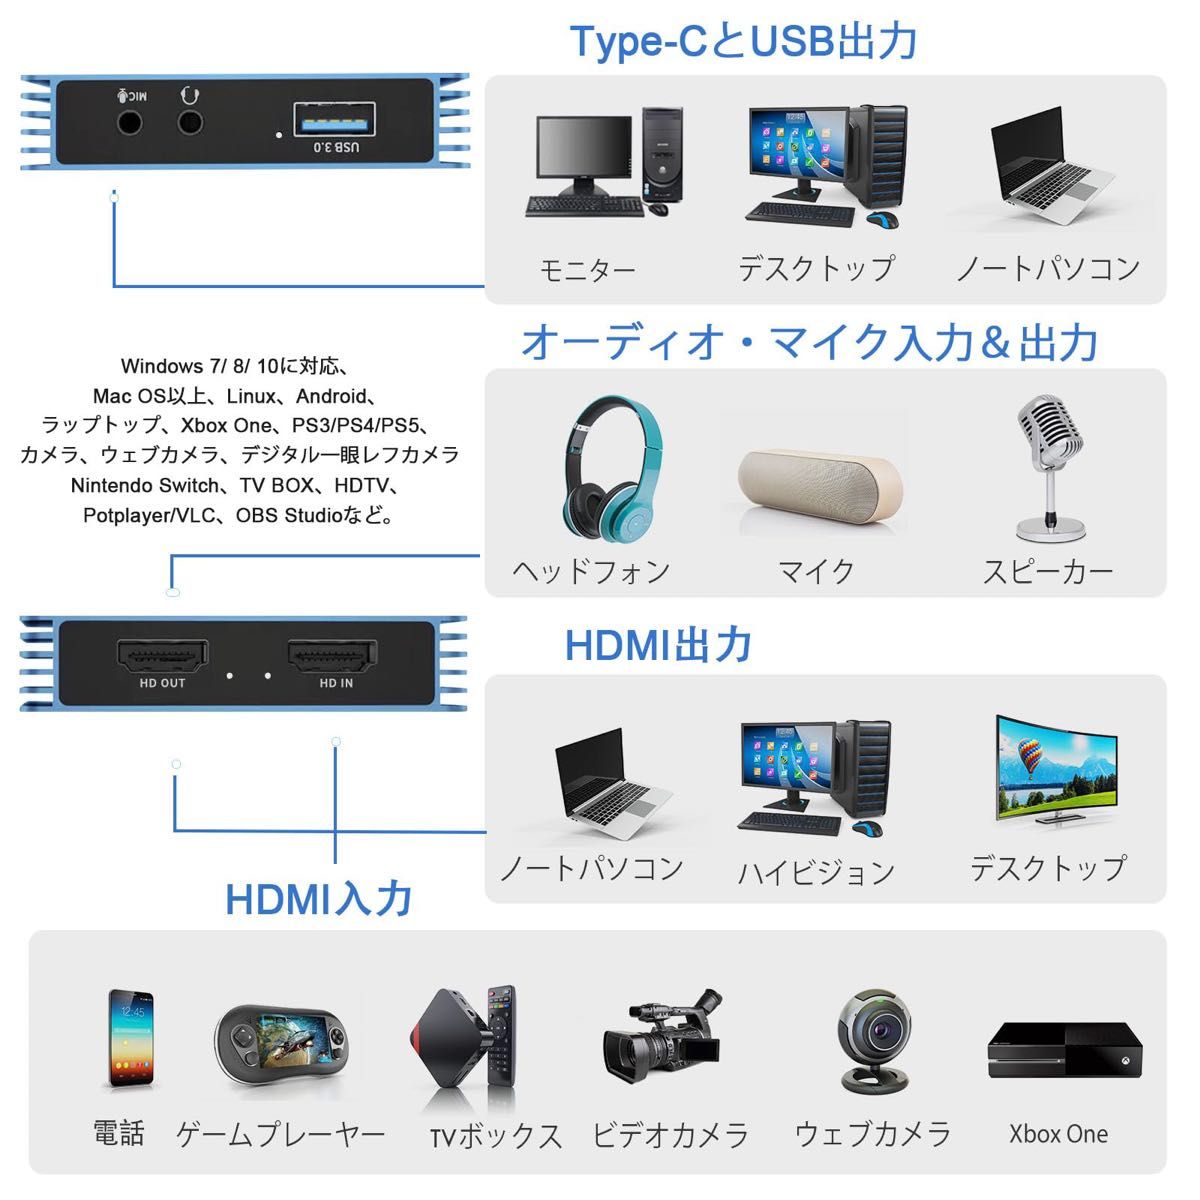 スイッチ用　GUERMOK ビデオキャプチャカード　4K USB3.0 HDMI